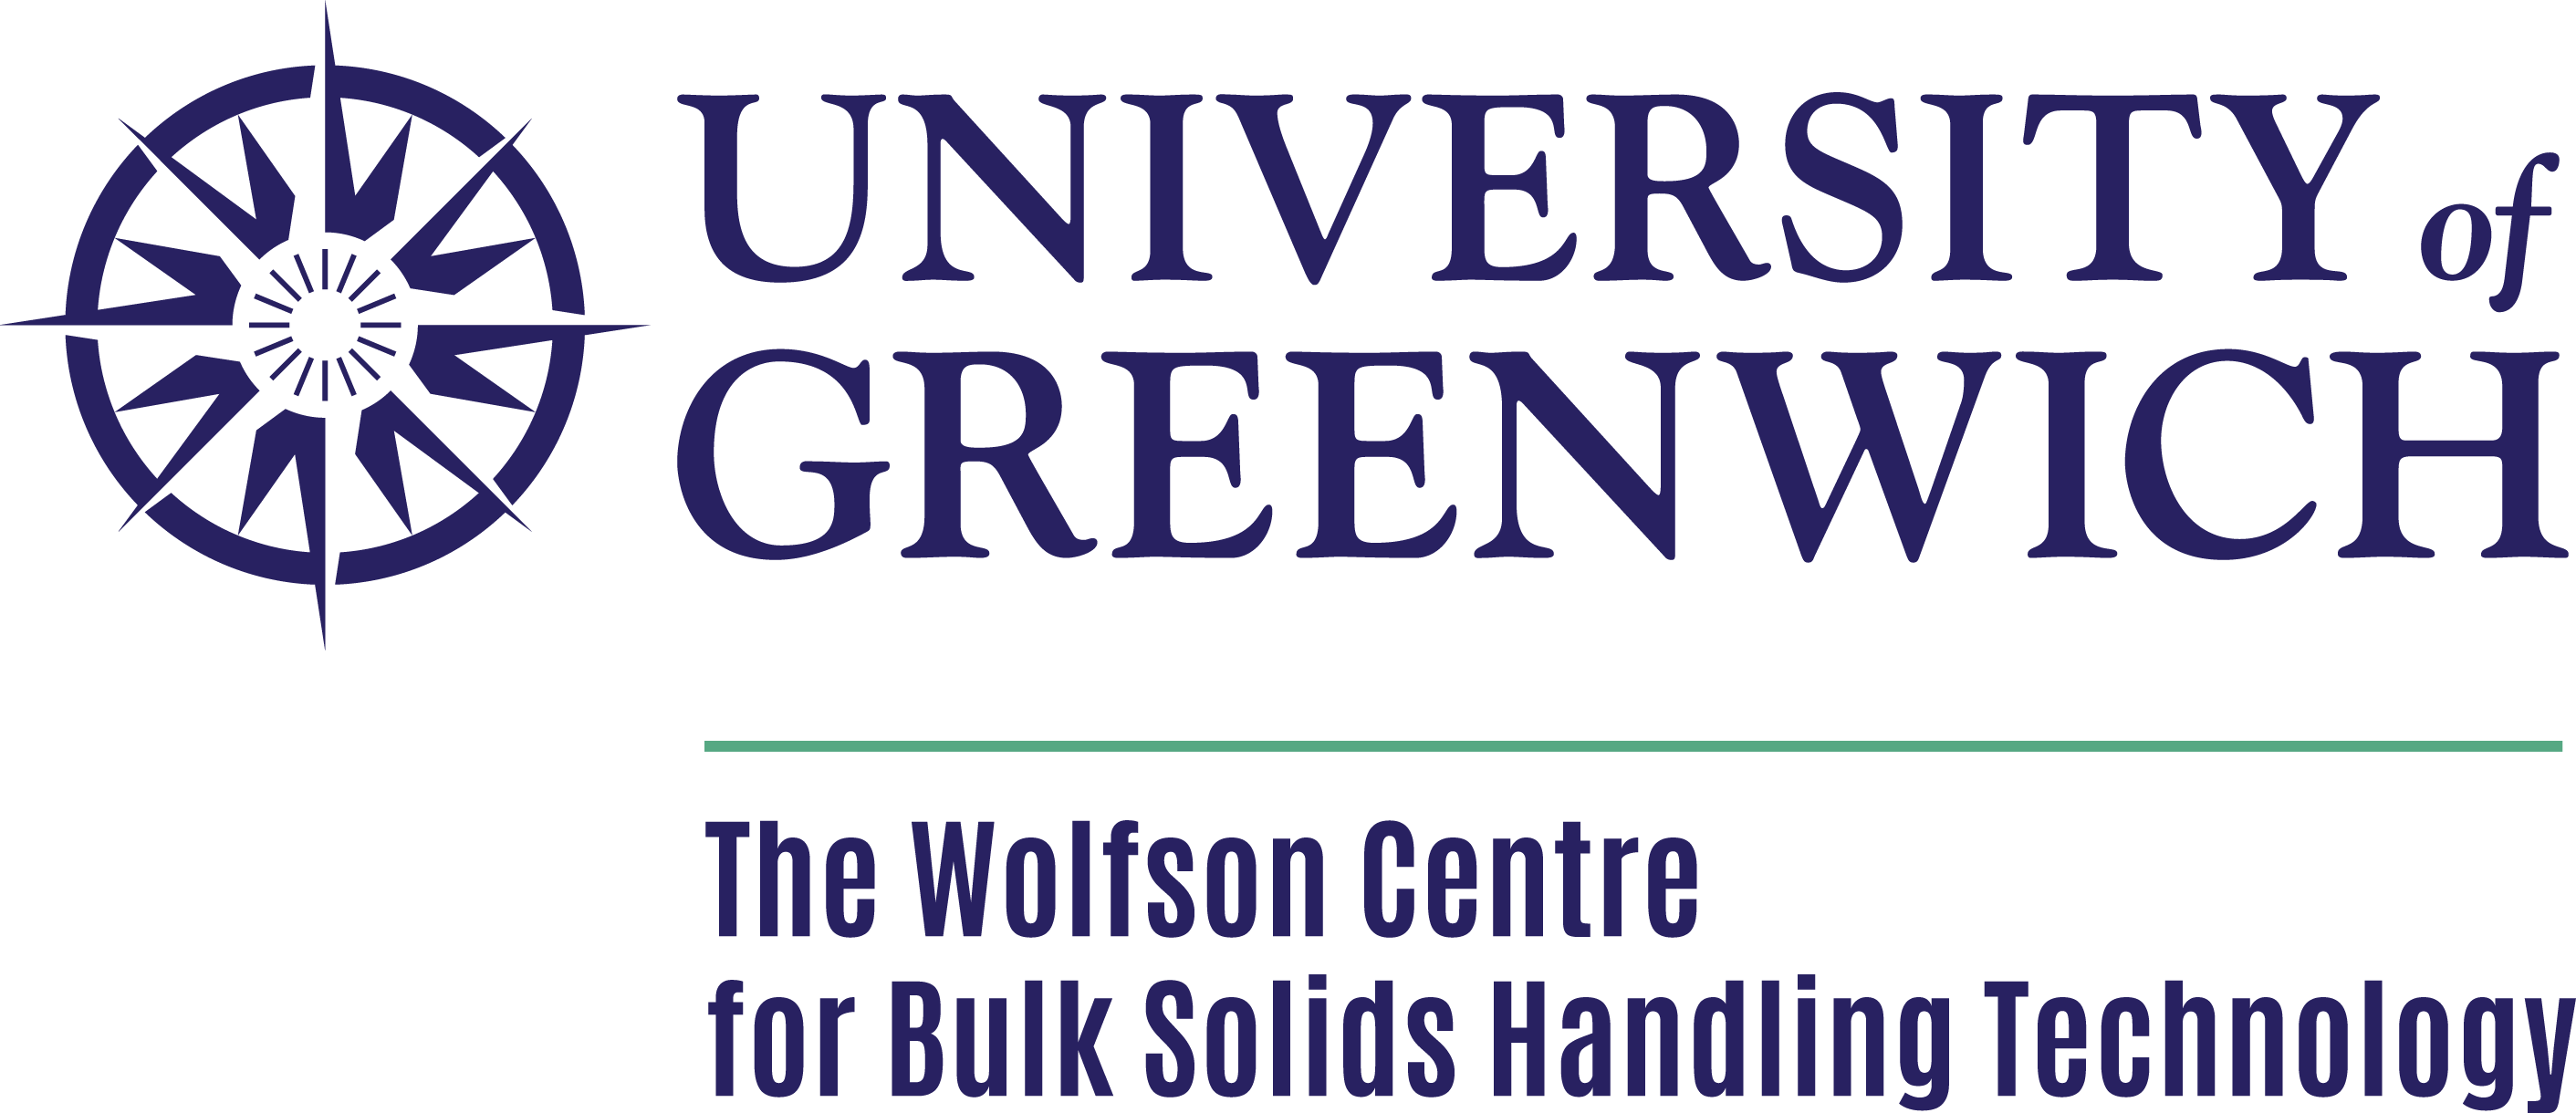 格林威治大学徽标的沃尔夫森散装固体中心处理。